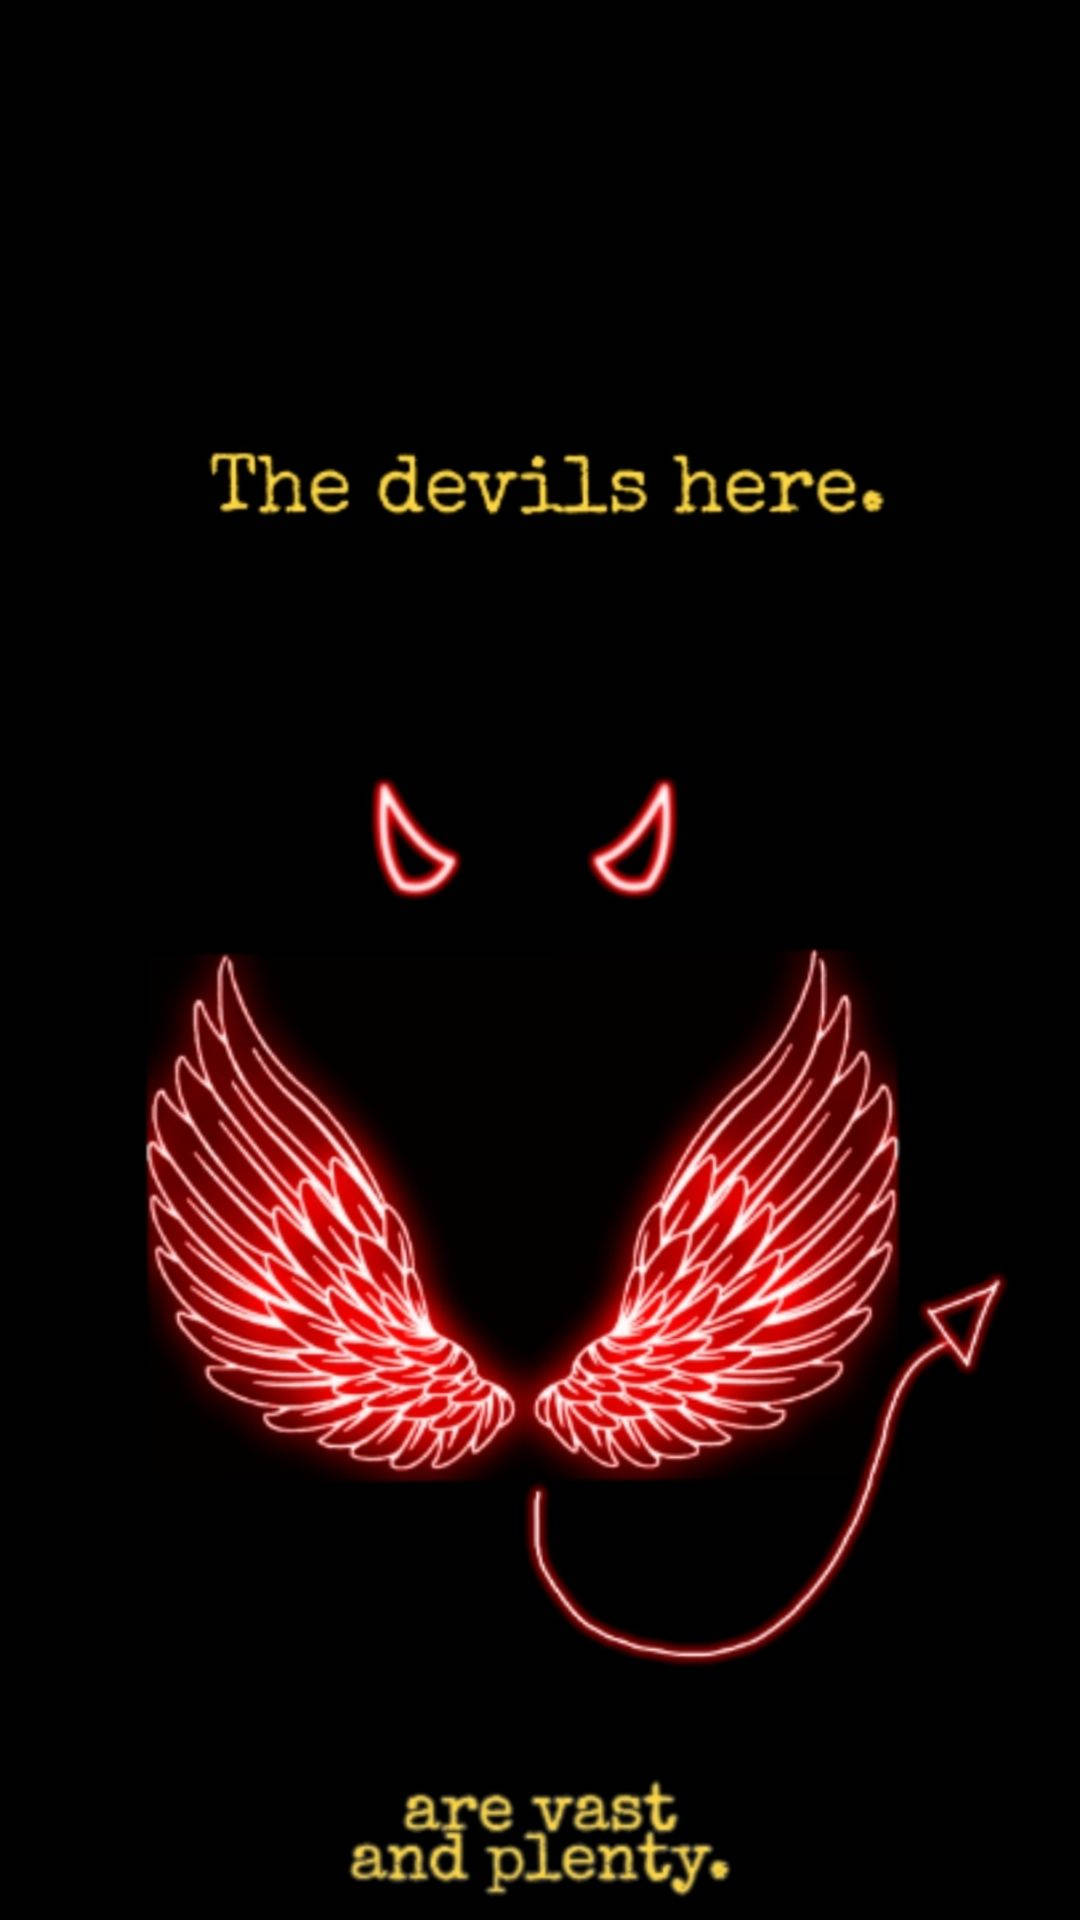 Angel Devil Wings Background Black Wing Devil Background Image for Free  Download